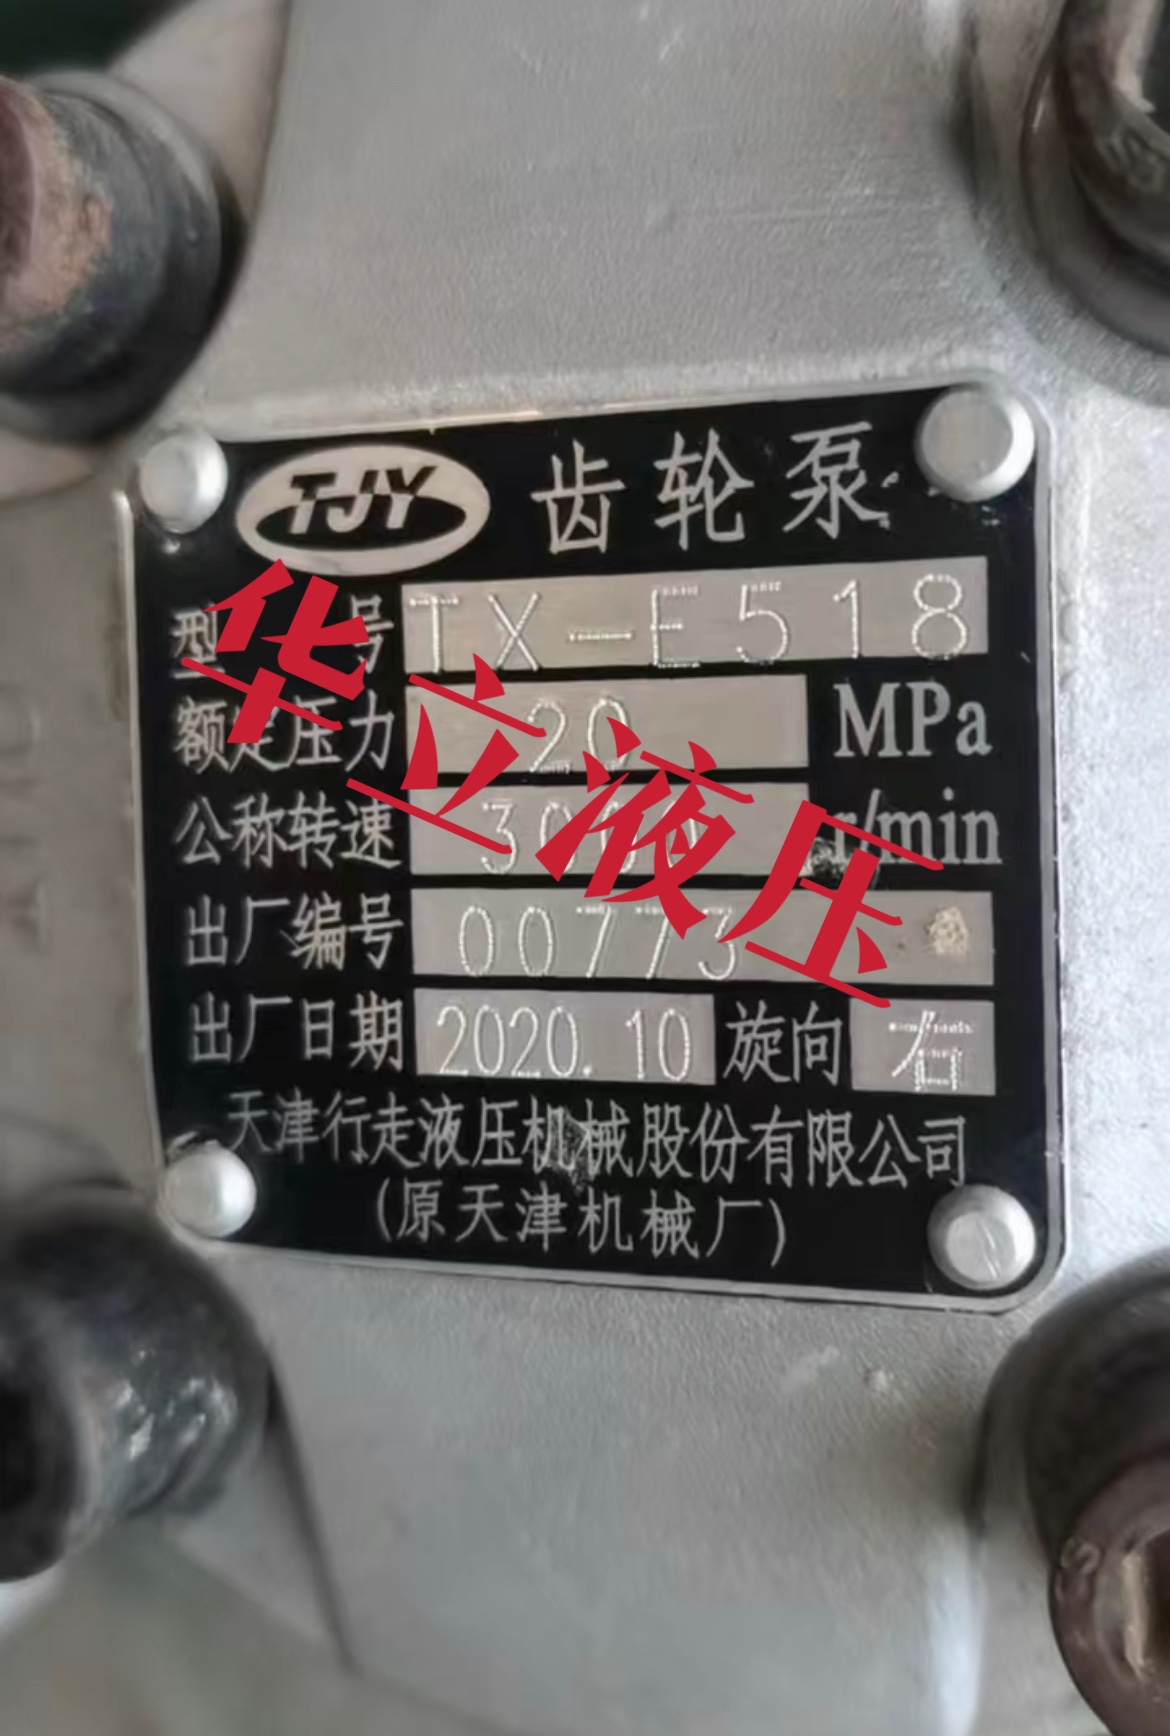 TX-E518天津行走液压泵-封面